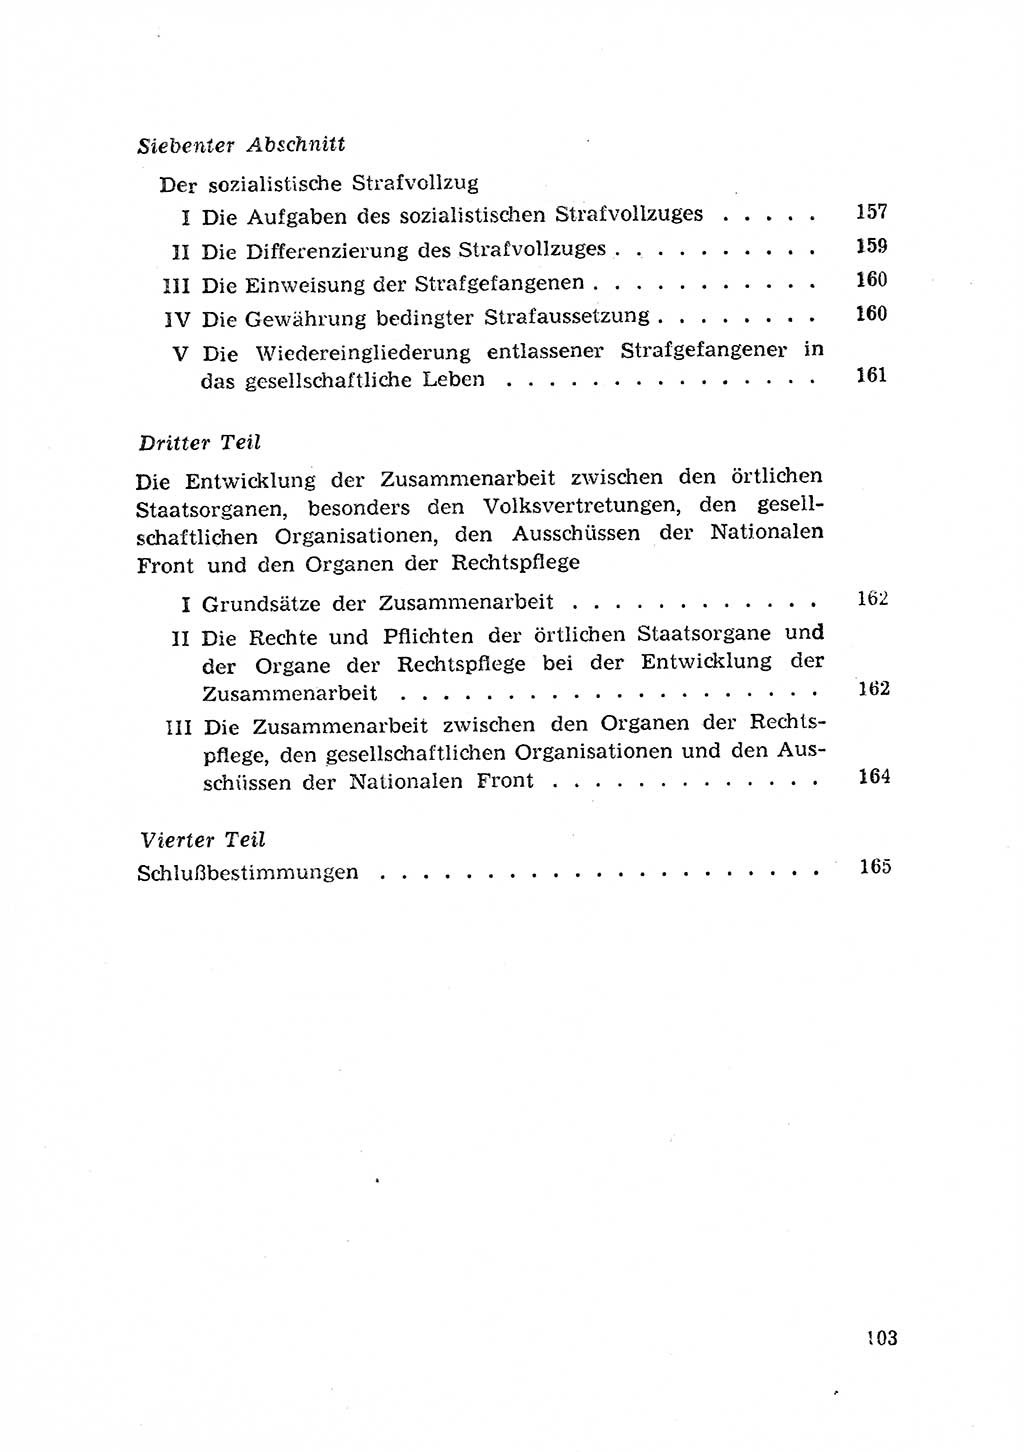 Rechtspflegeerlaß [Deutsche Demokratische Republik (DDR)] 1963, Seite 103 (R.-Pfl.-Erl. DDR 1963, S. 103)